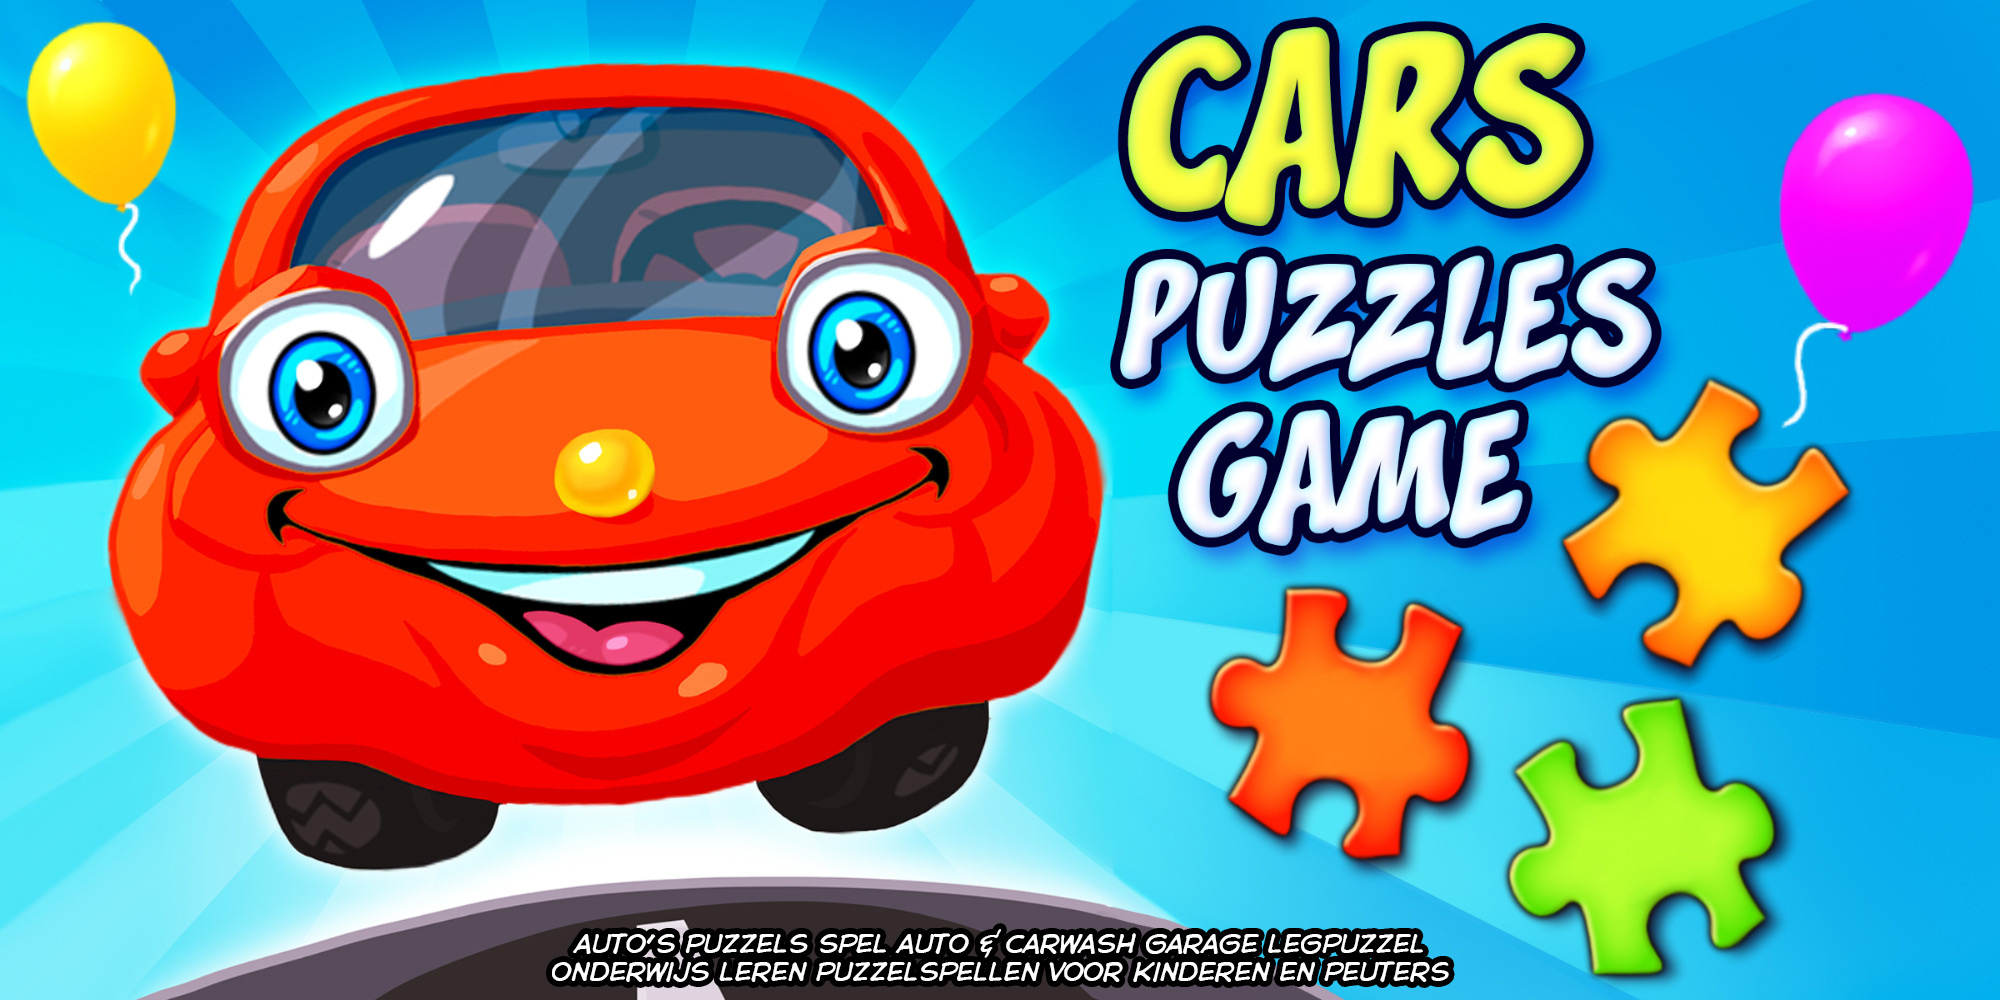 In de genade van Amerika varkensvlees Cars Puzzles Game - auto's puzzels spel auto & carwash garage legpuzzel  onderwijs leren puzzelspellen voor kinderen en peuters | Nintendo Switch  download software | Games | Nintendo